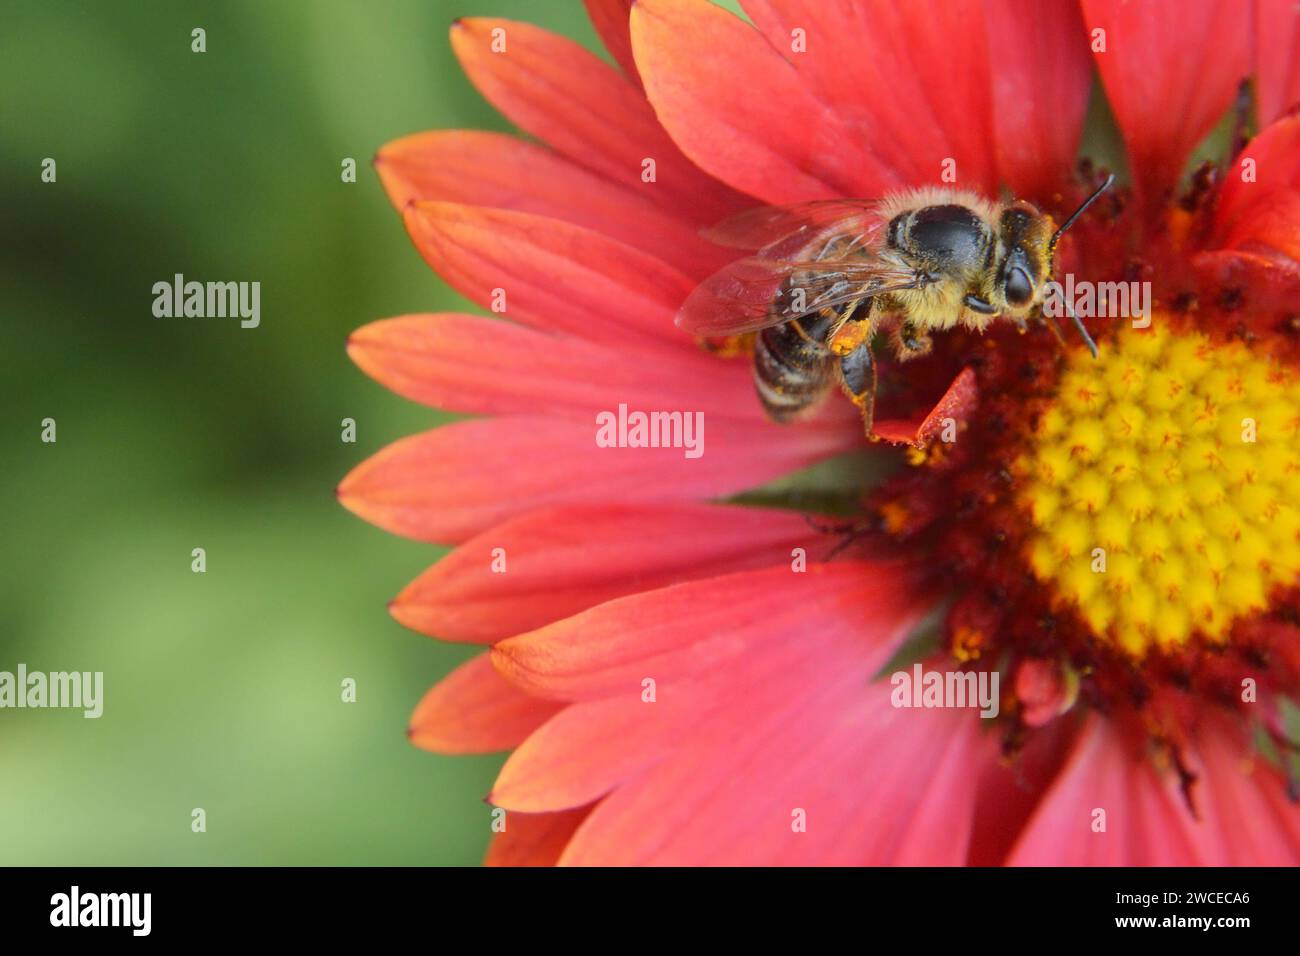 Bee and red gaillardia flower, macro image Stock Photo